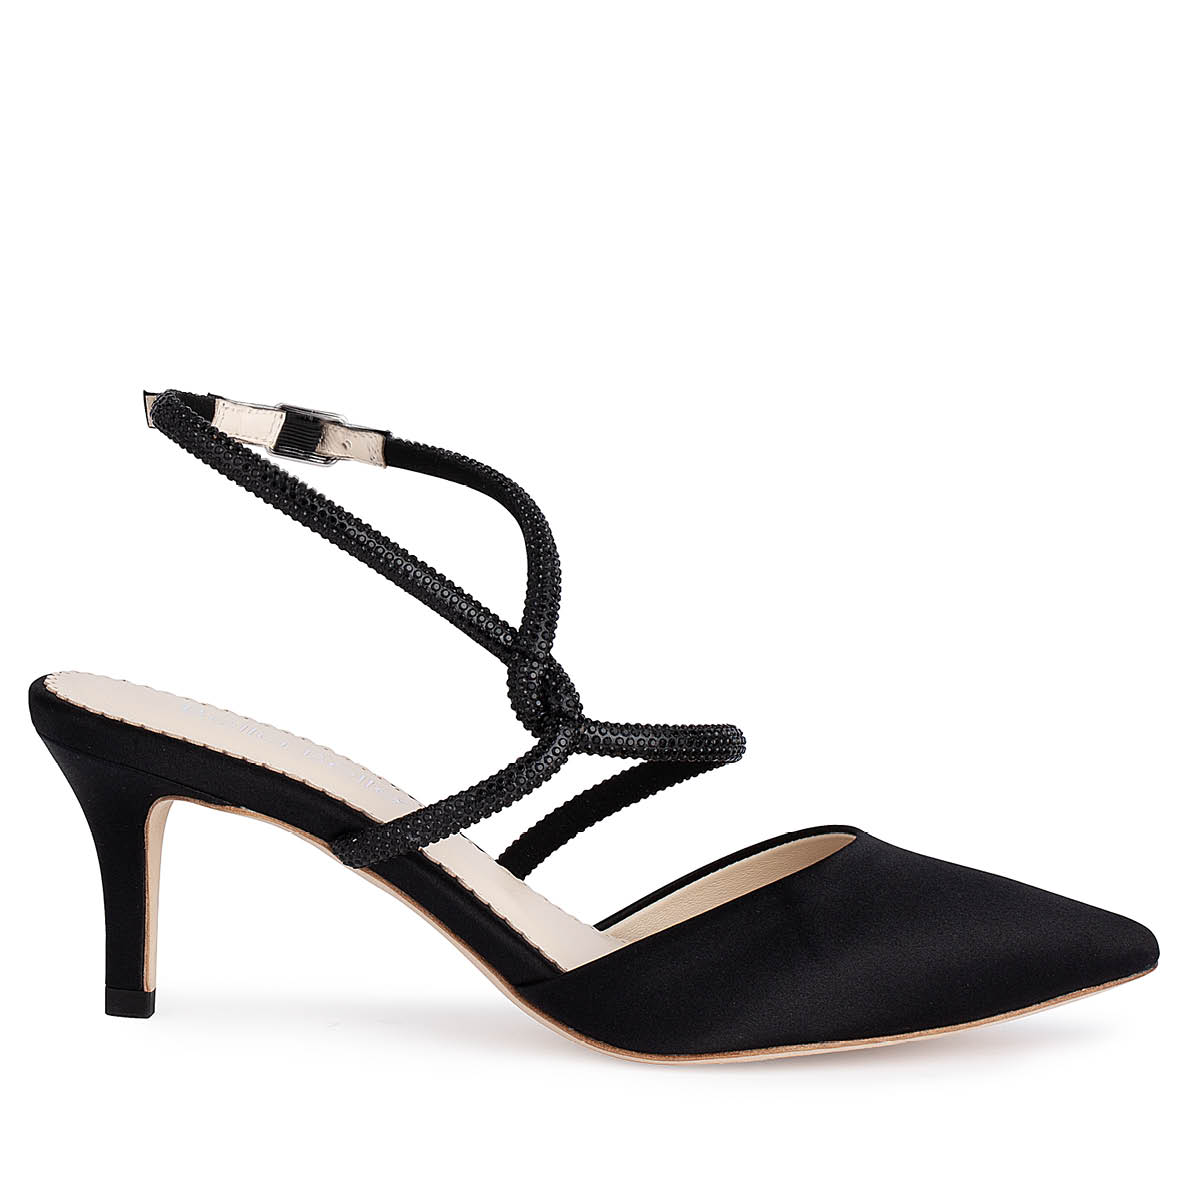 Glaze Black Strappy Stiletto Heels Size 8.5 | eBay